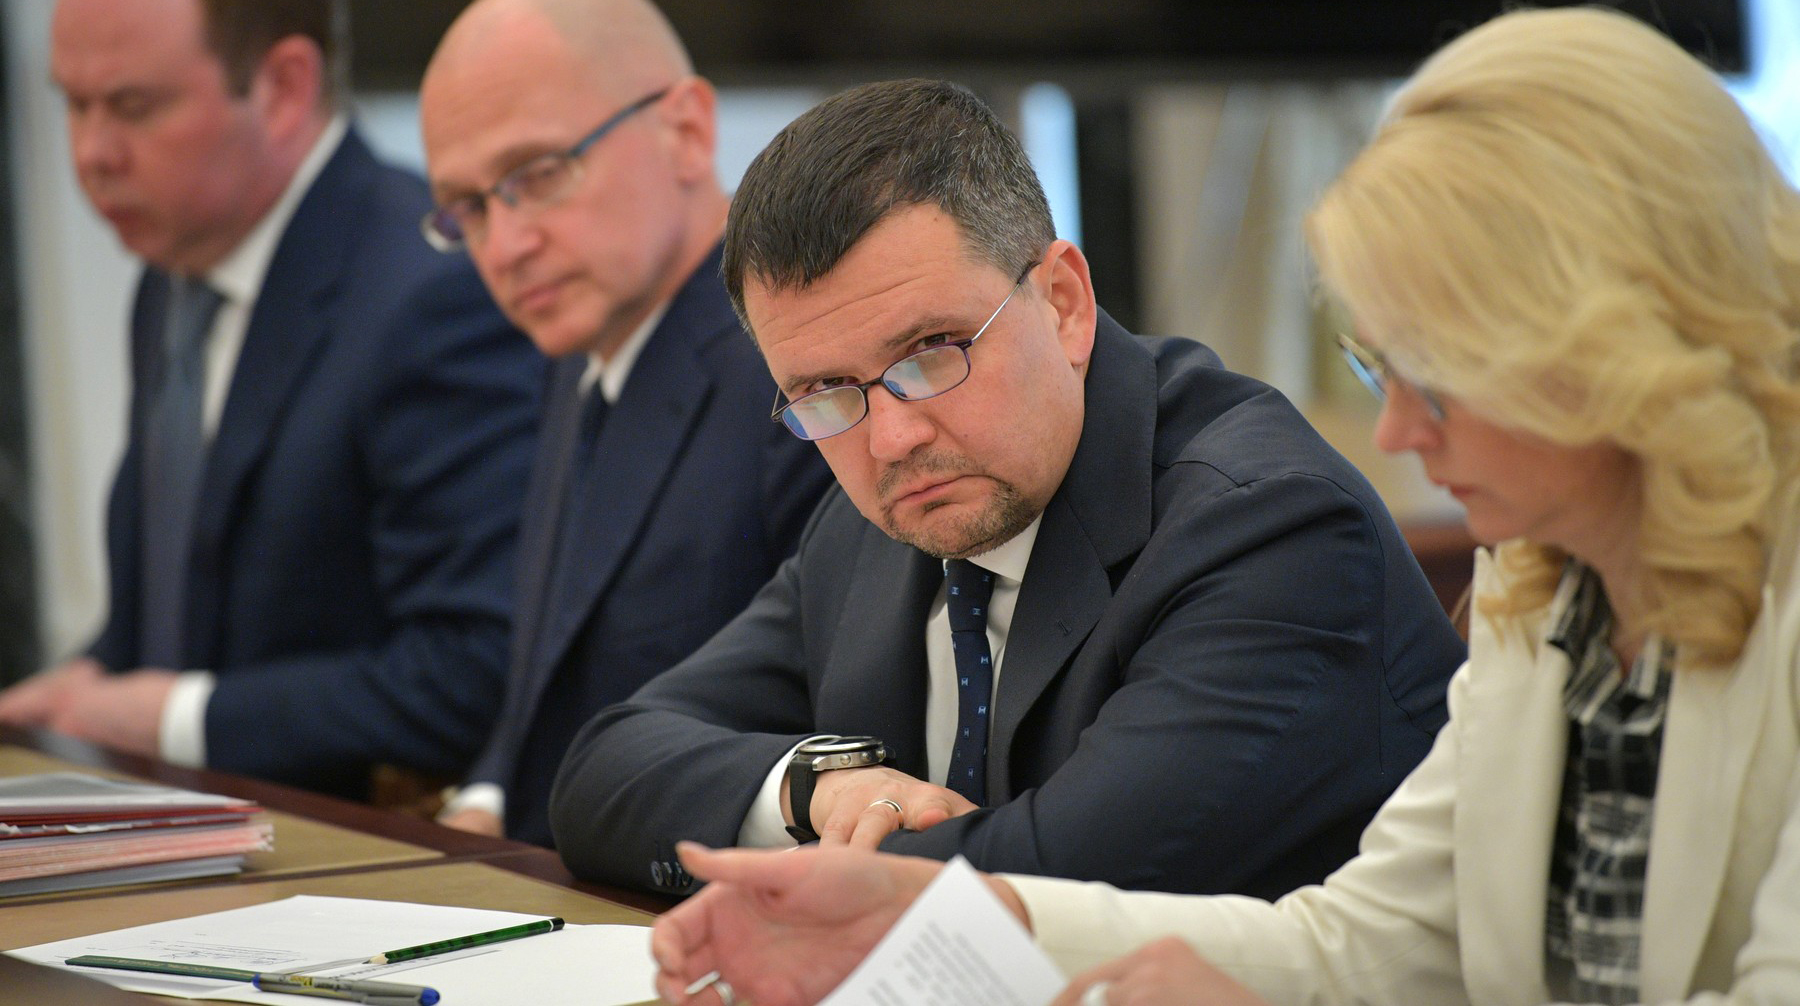 Переход на новый тип документов может произойти в 2022 году, заявил вице-премьер Максим Акимов вице-премьер Максим Акимов